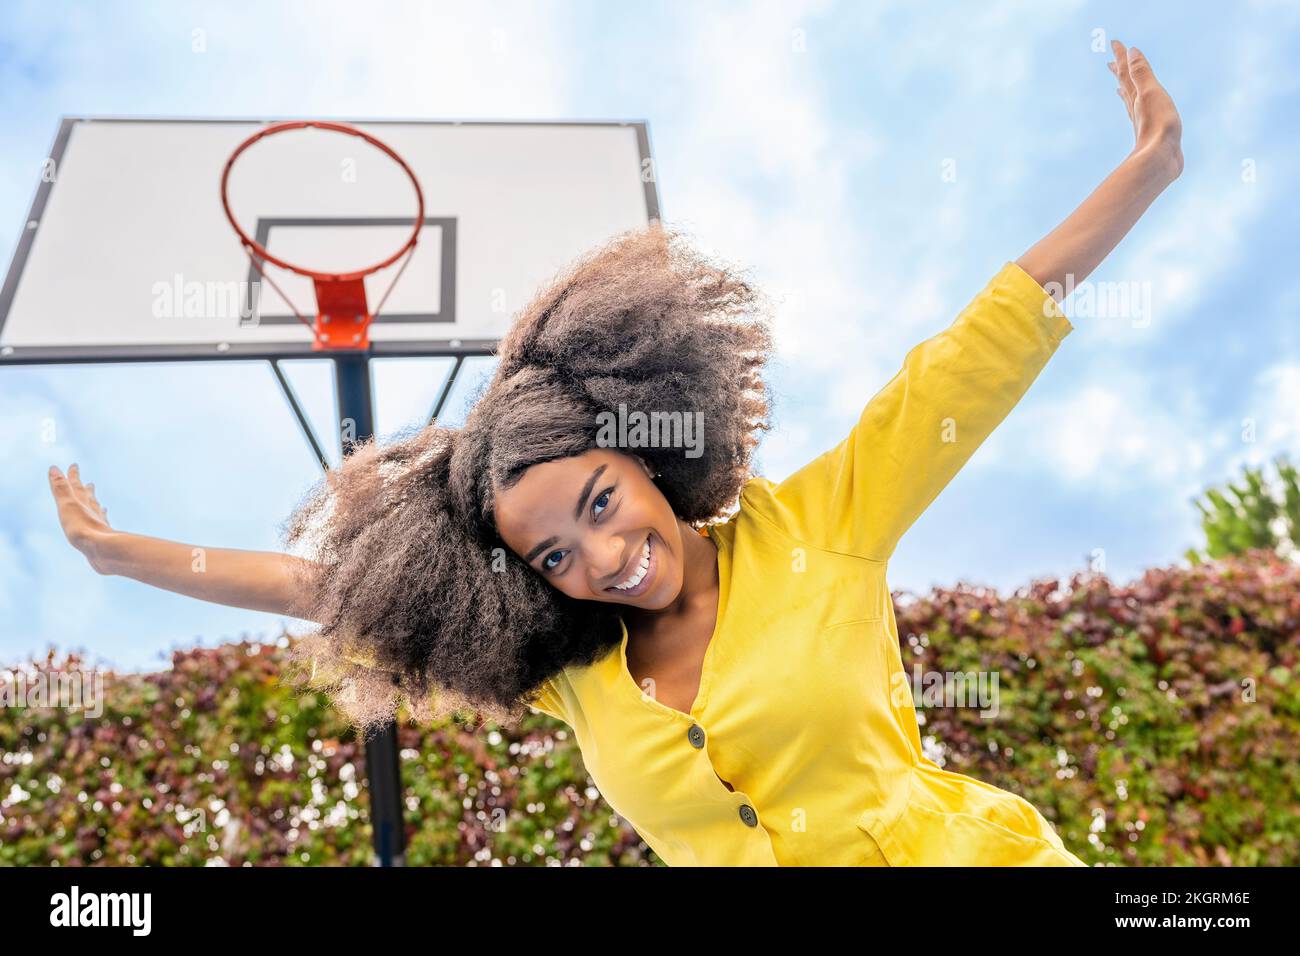 Eine sorgenfreie junge Frau mit ausgestreckten Armen, die vor dem Basketballkorb steht Stockfoto